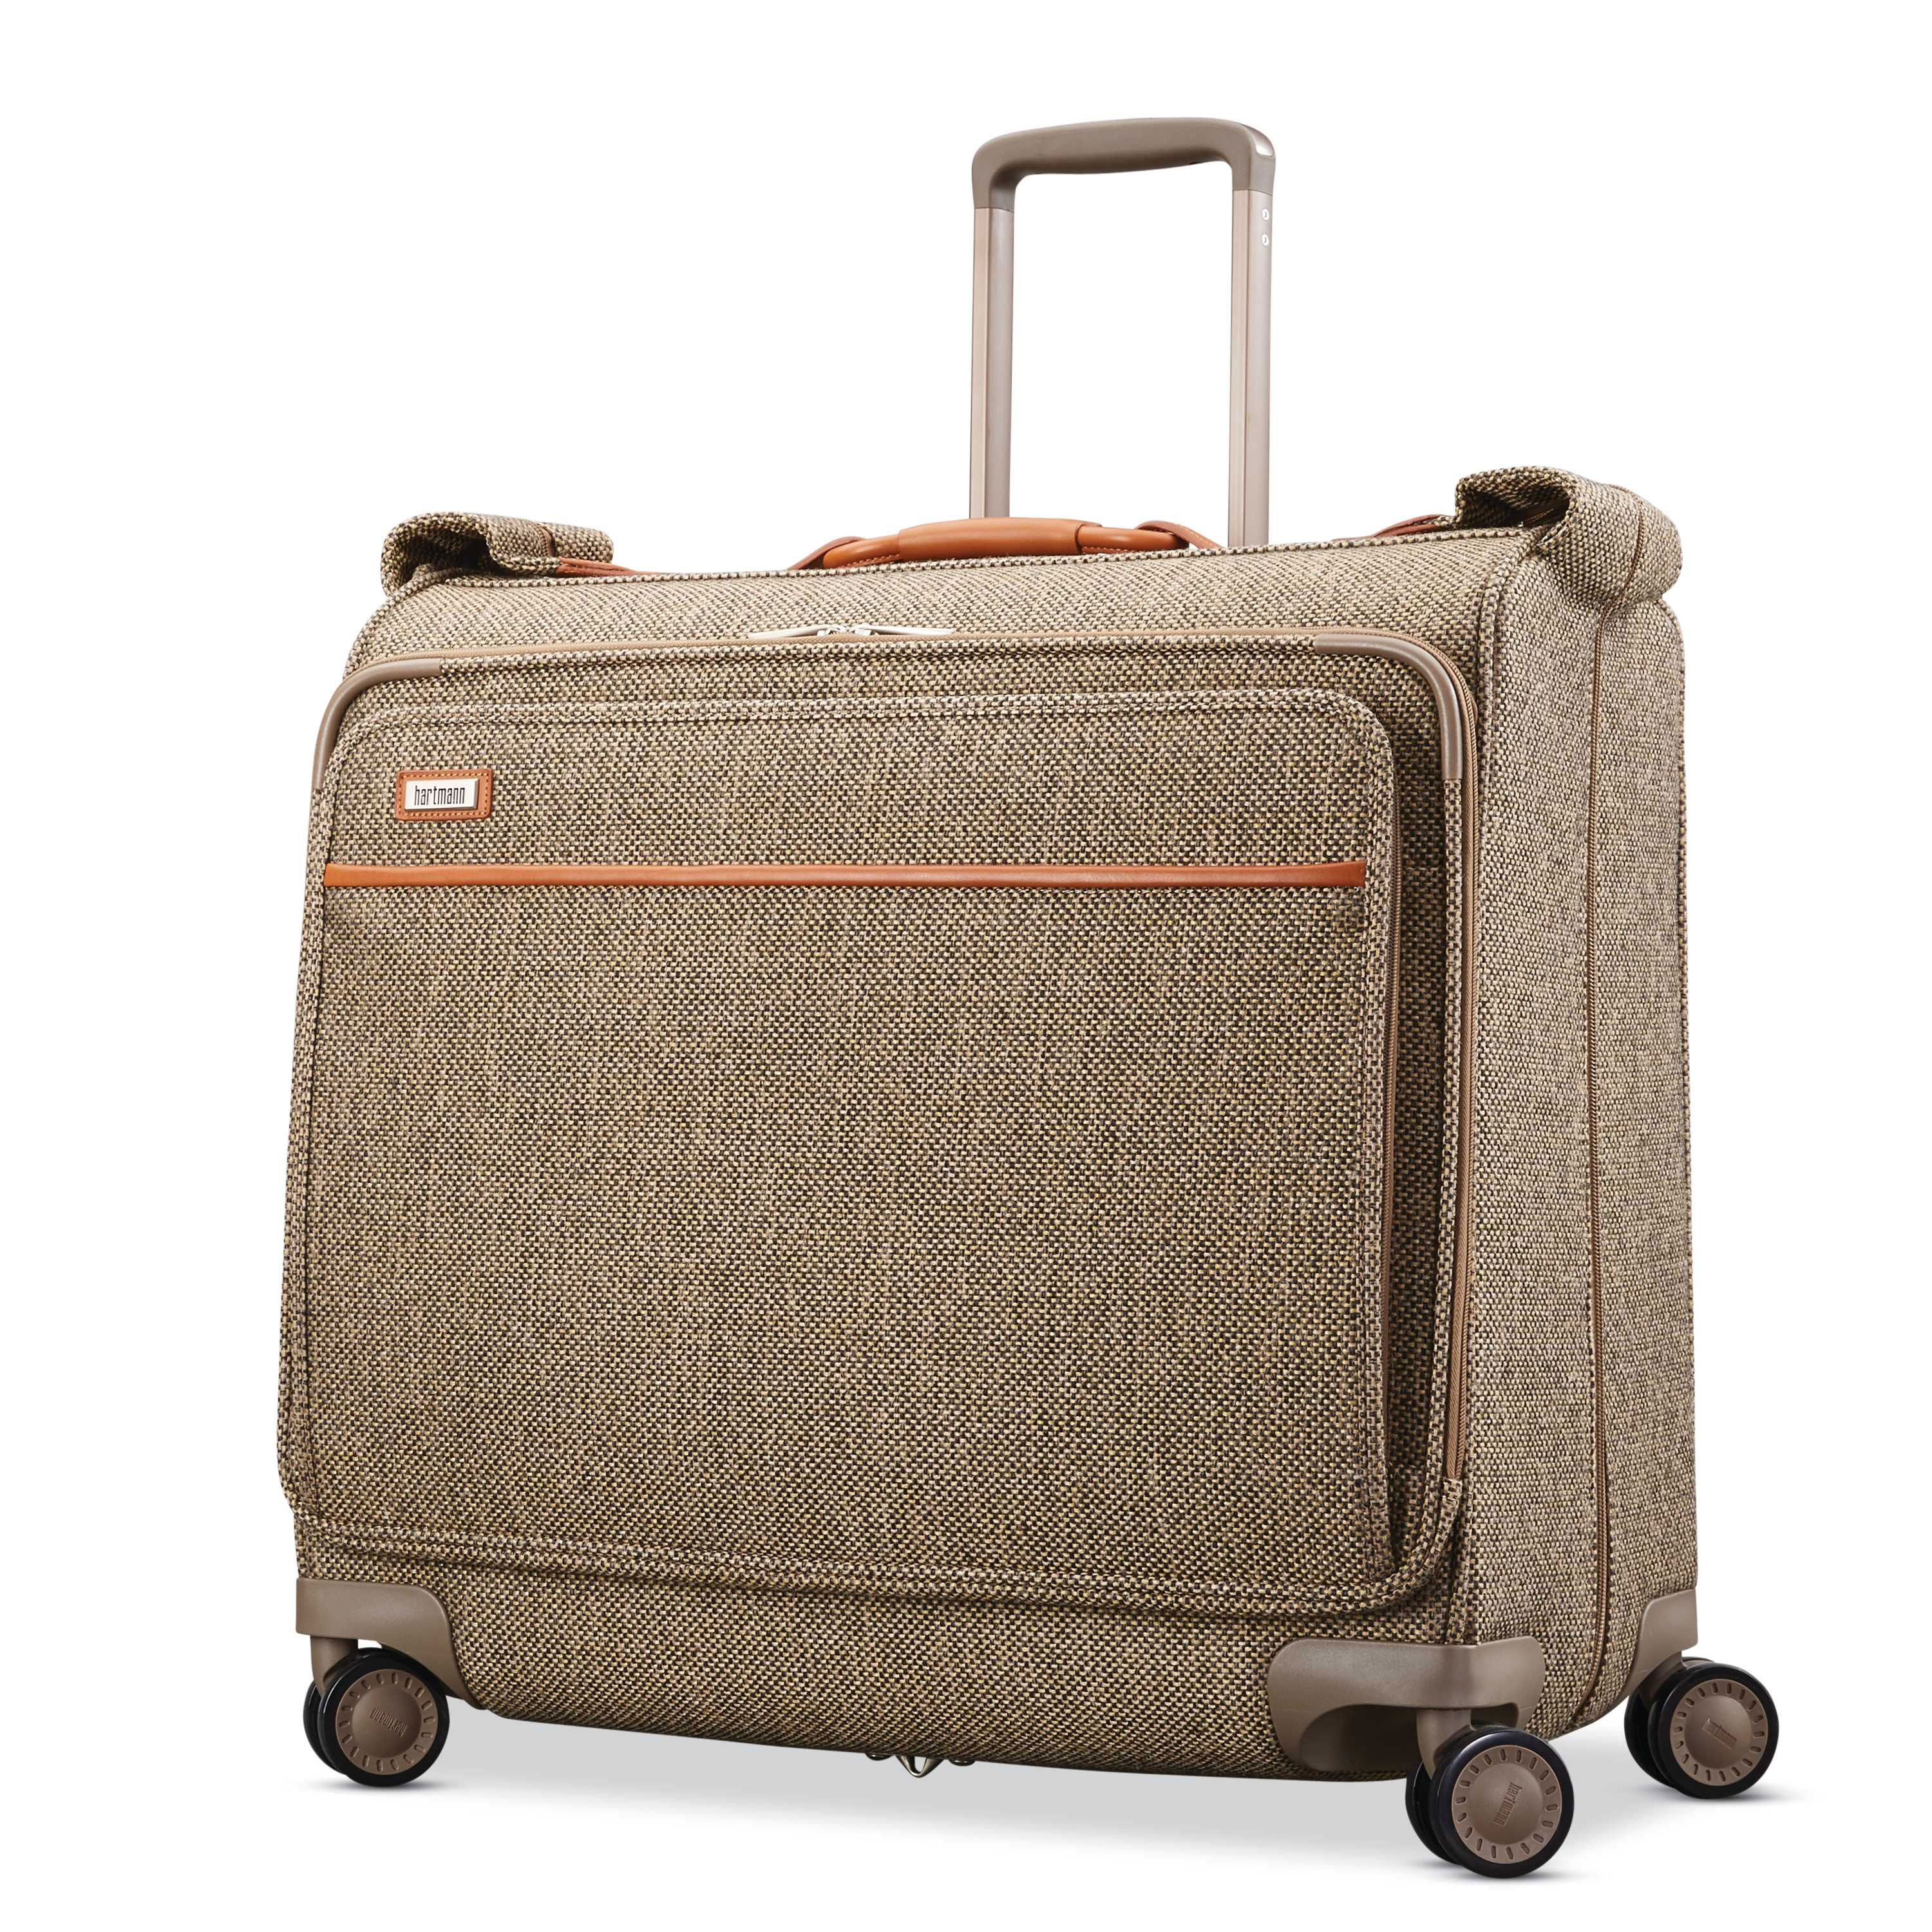 LARGE VINTAGE HARTMANN Belting Leather Suitcase Luggage Case